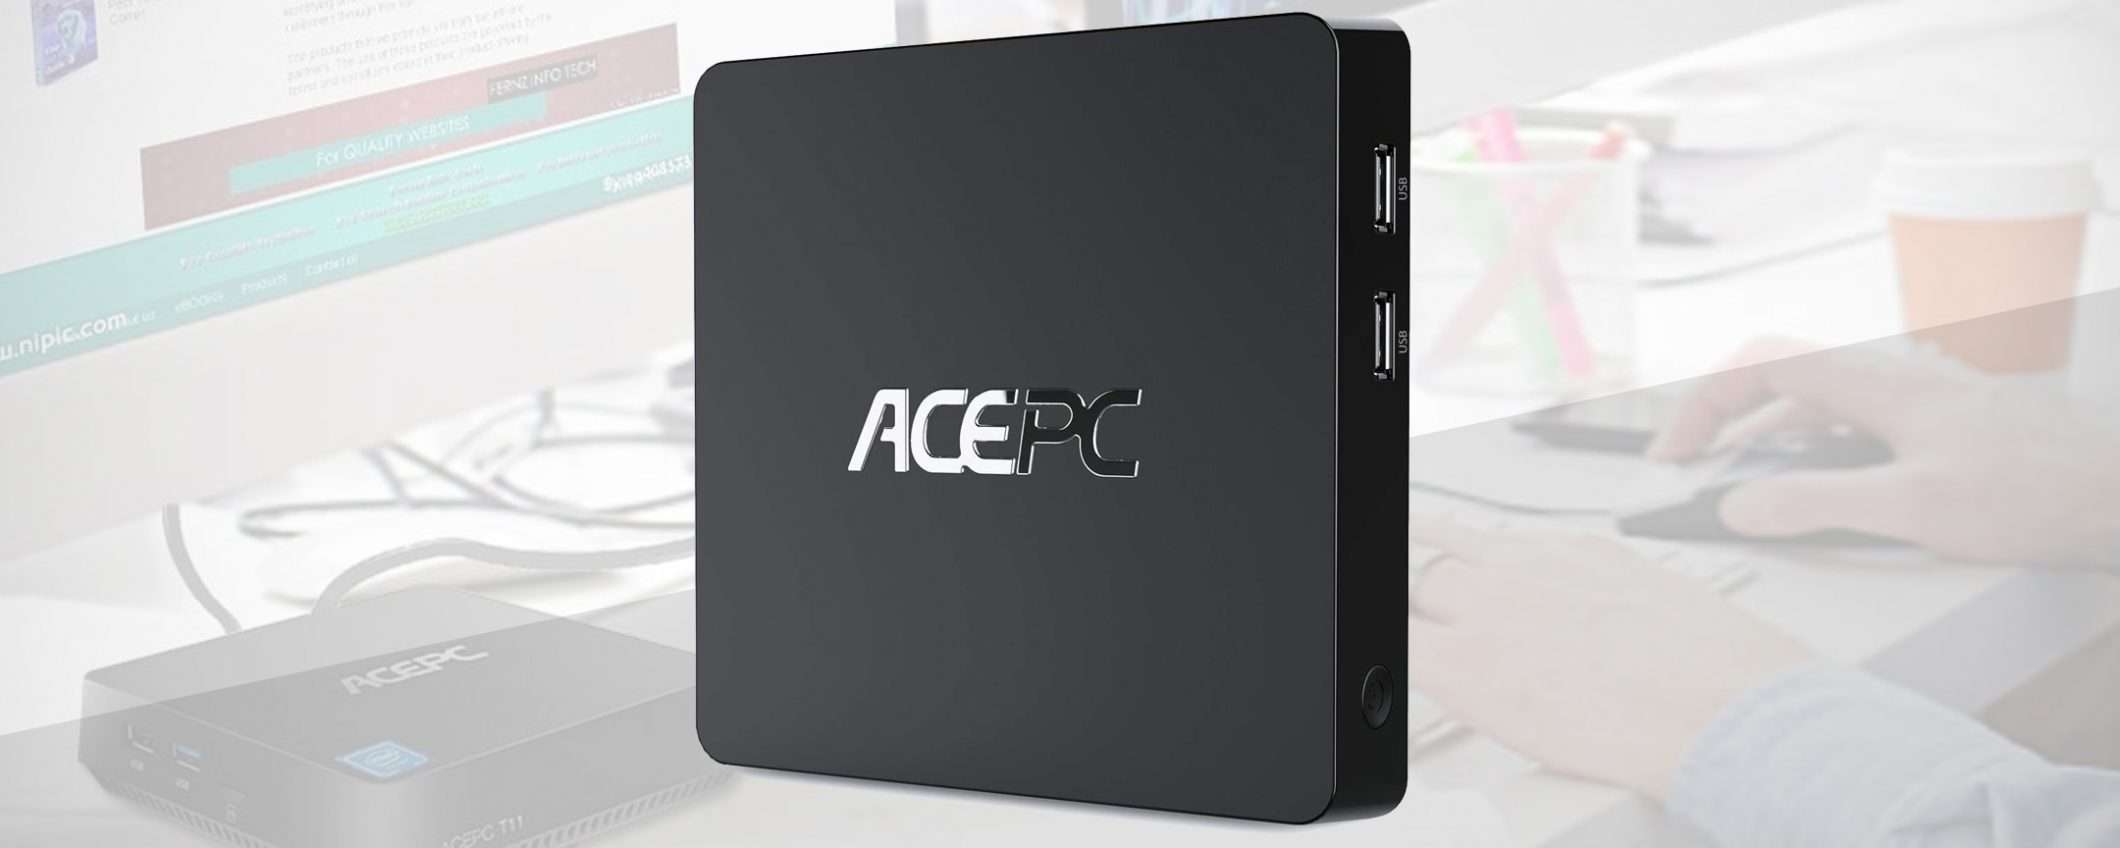 ACEPC: coupon da 10 e 20 € di sconto per i Mini PC